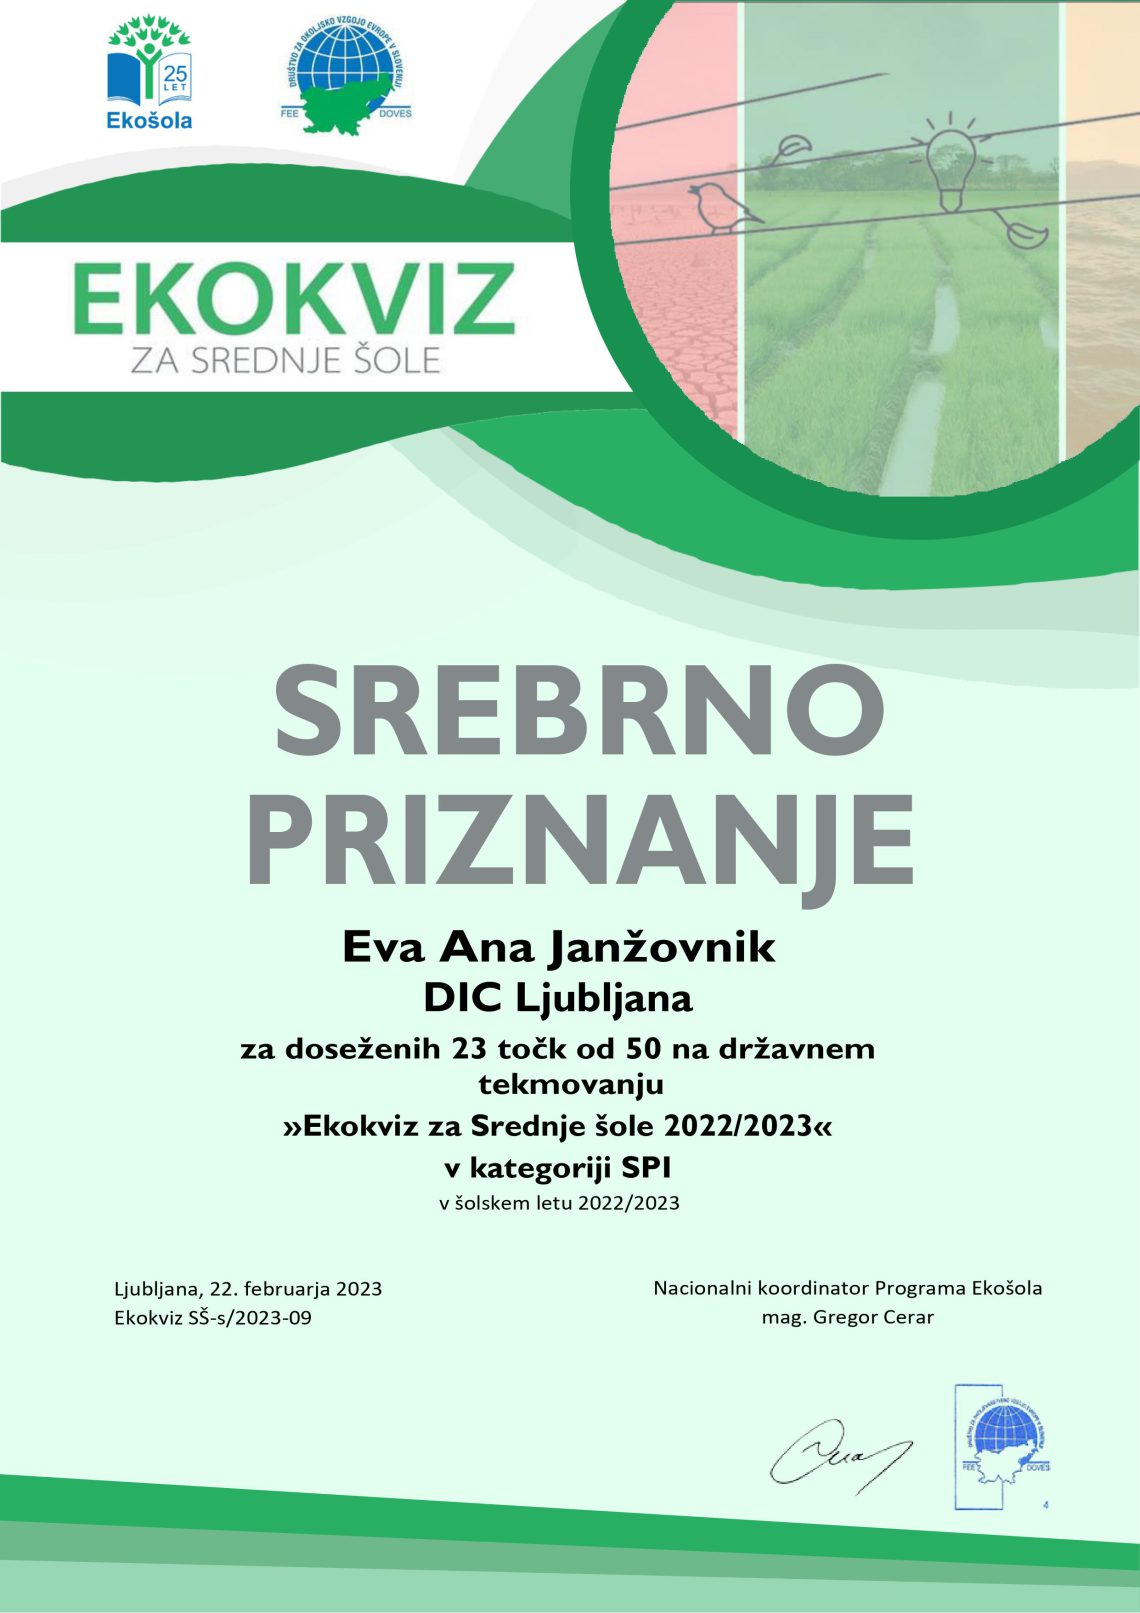 Ekokviz Srebrno priznanje Eva Ana Janžovnik. Ekokviz za srednje šole 2022/2023 v kategoriji SSI PTI